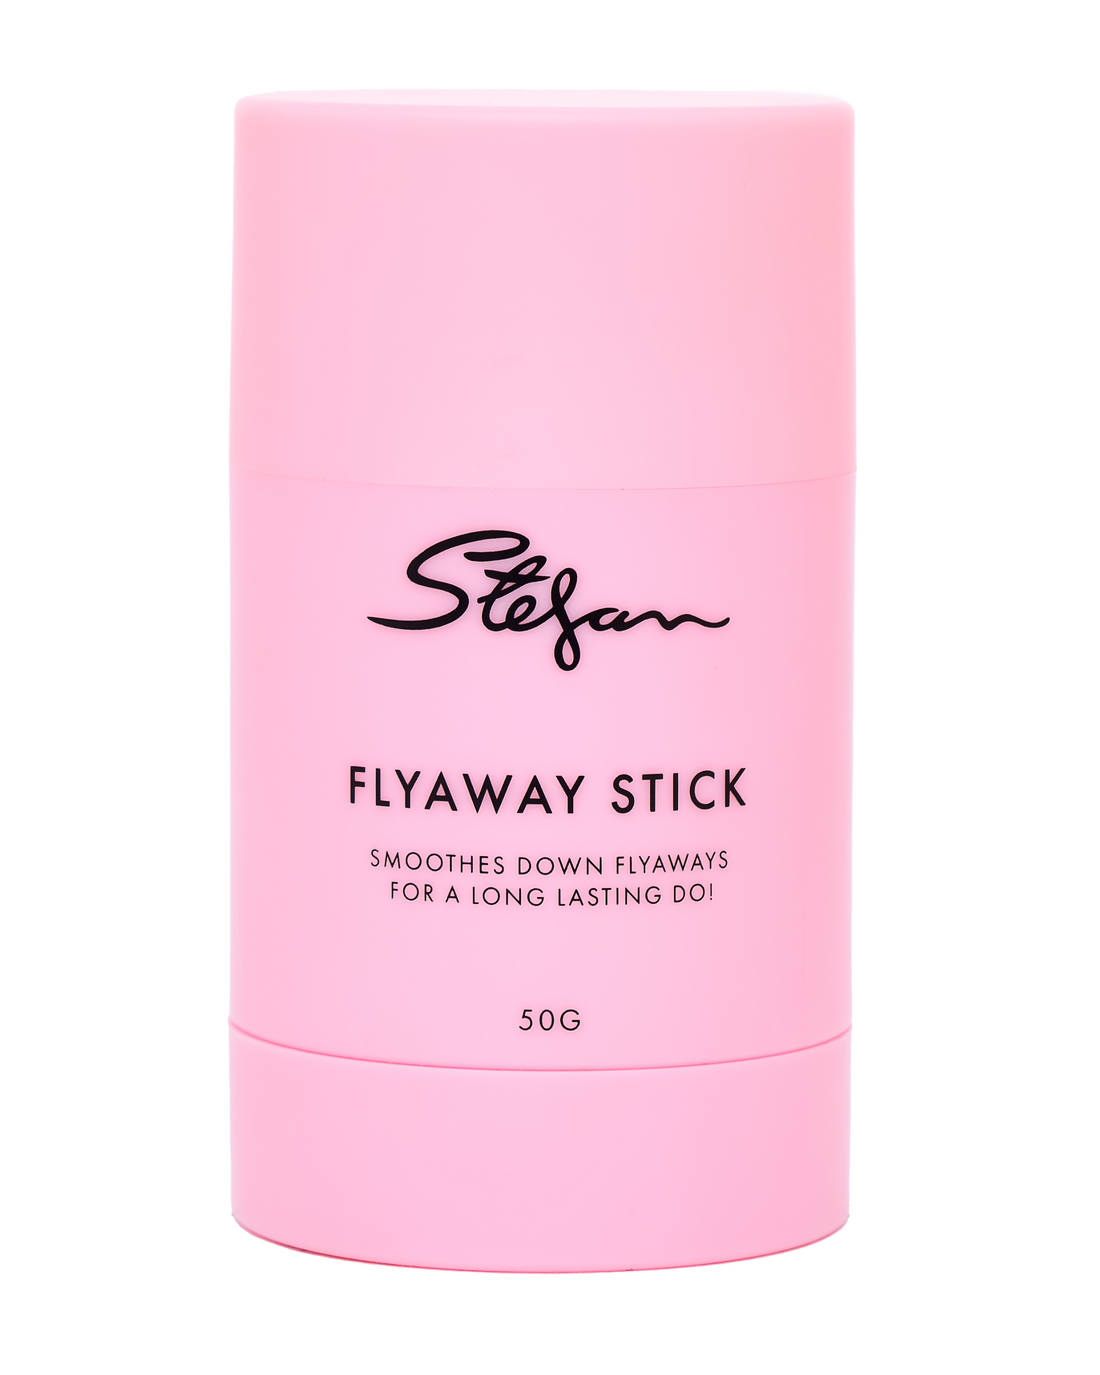 Stefan Flyaway Wax Stick